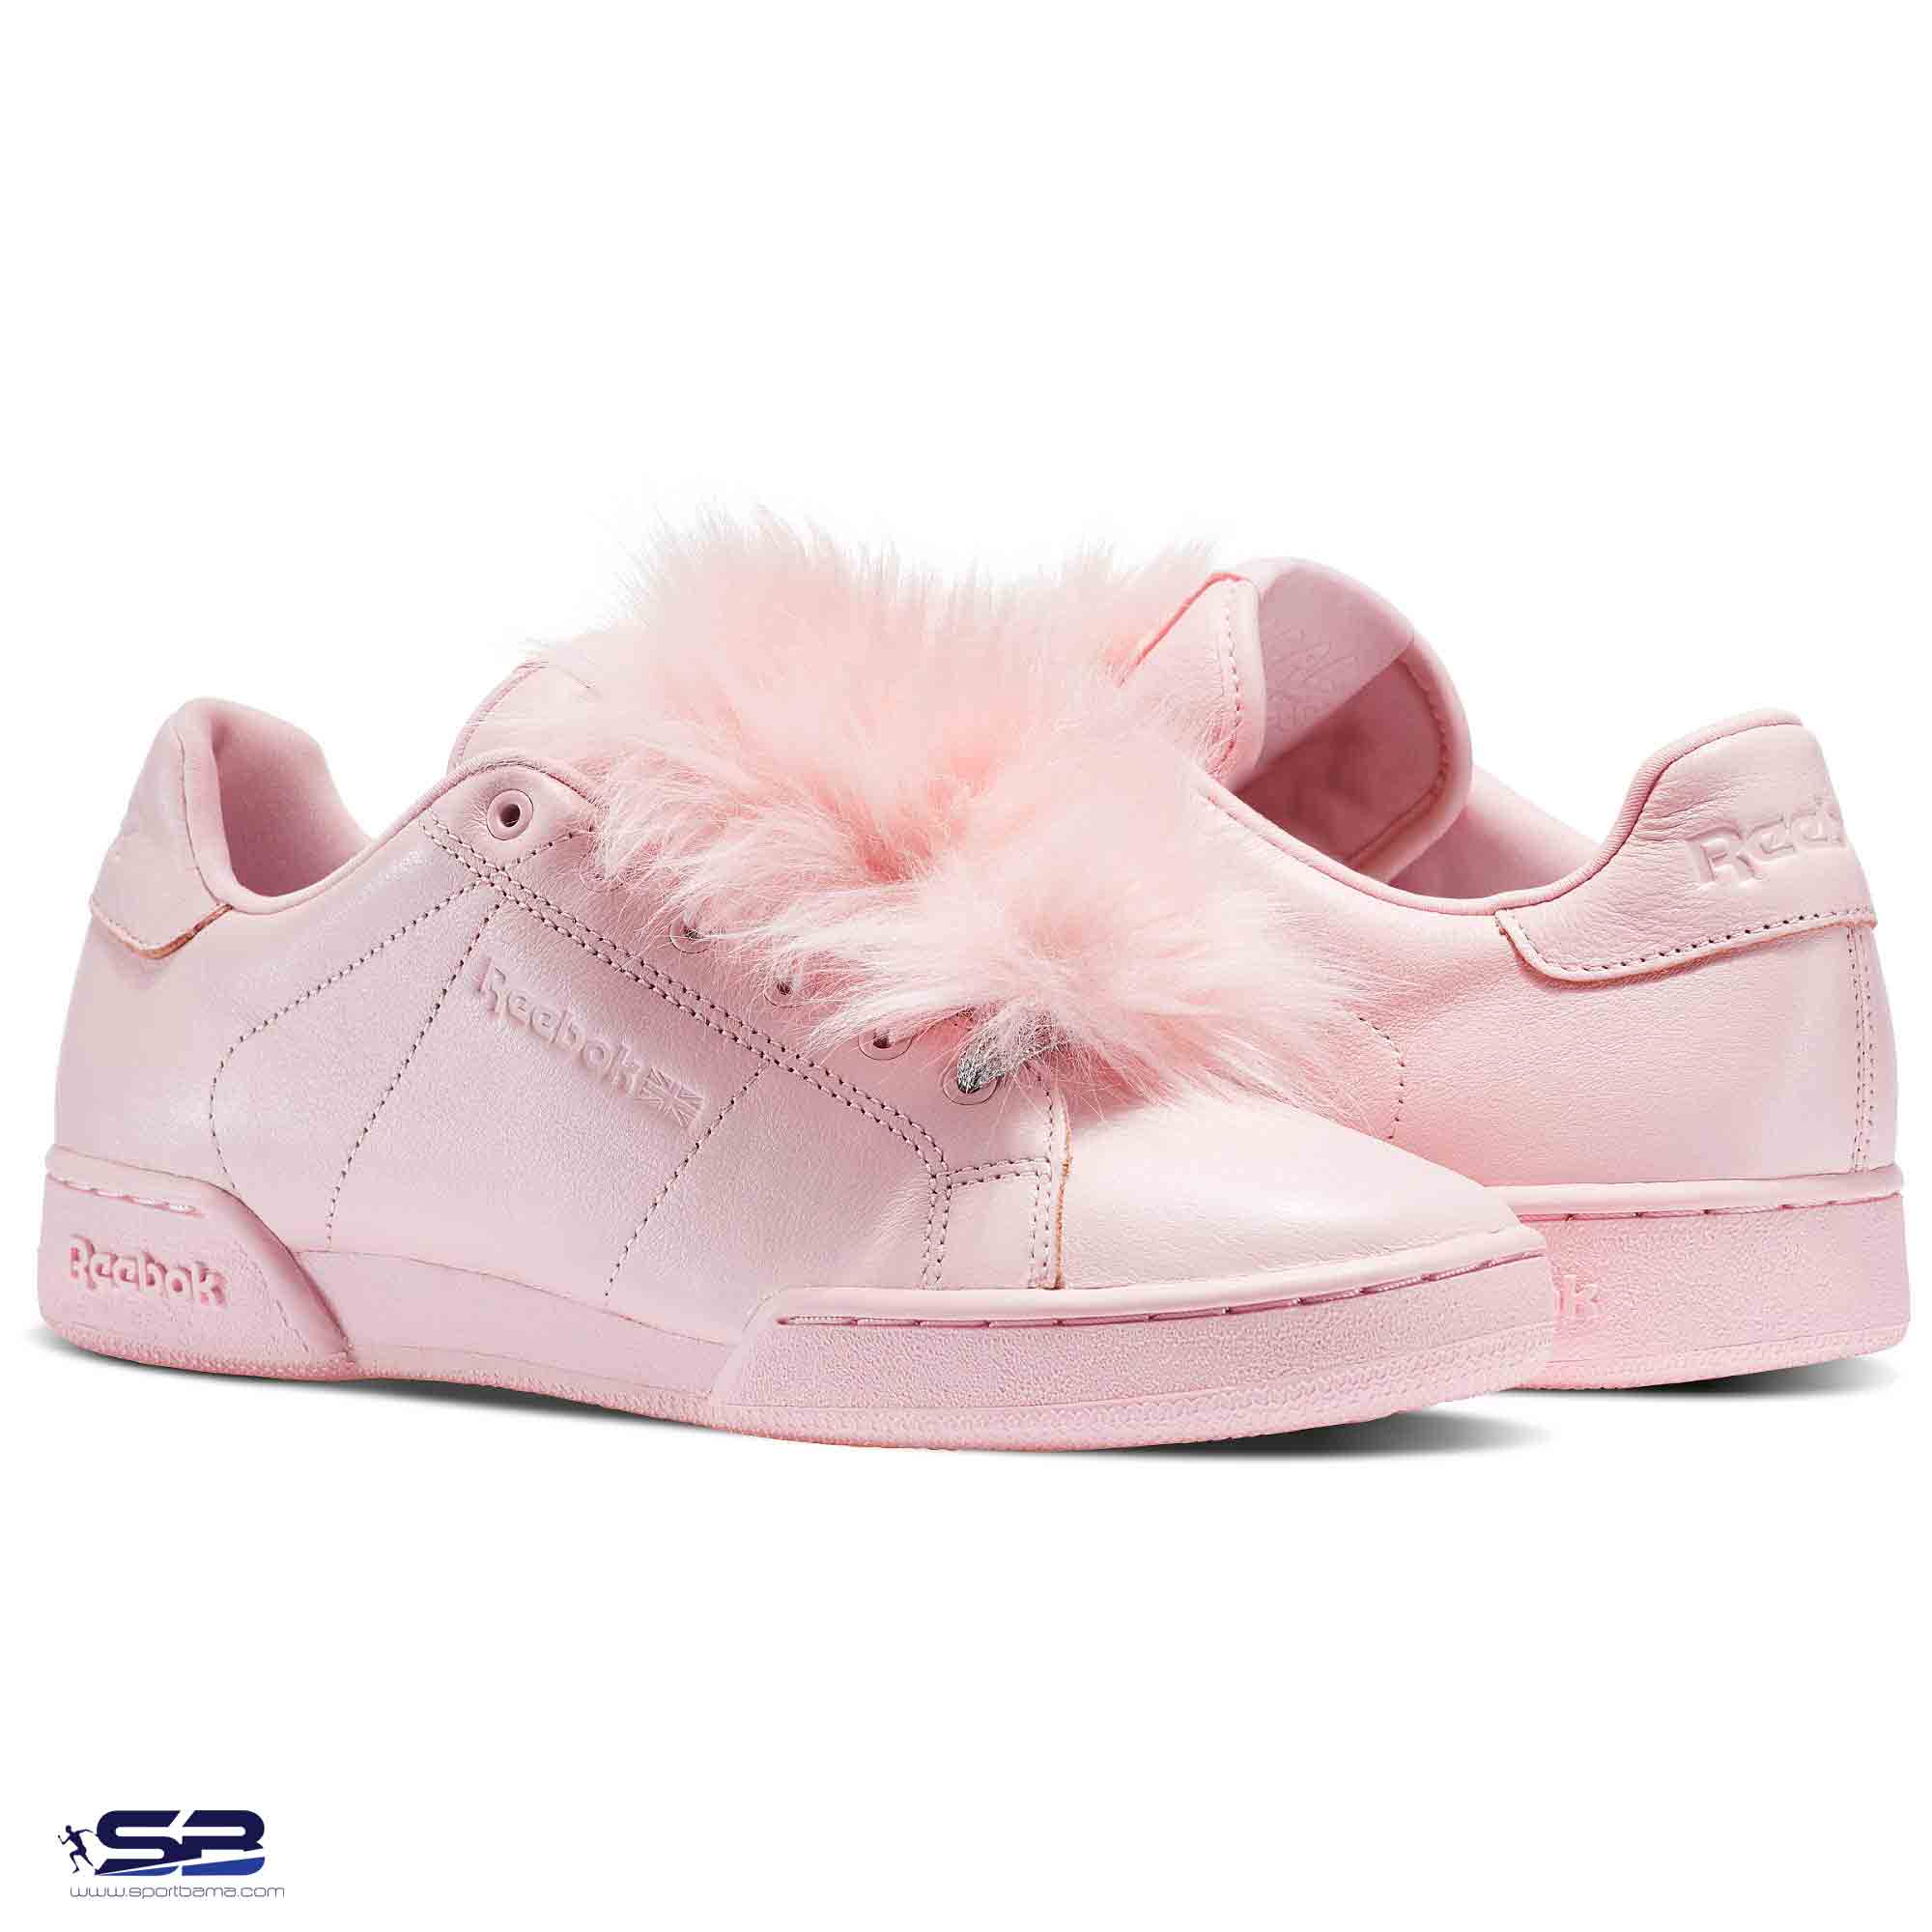  خرید  کفش کتانی ریباک  صورتی  Reebok x Local Heroes npc IIne pink